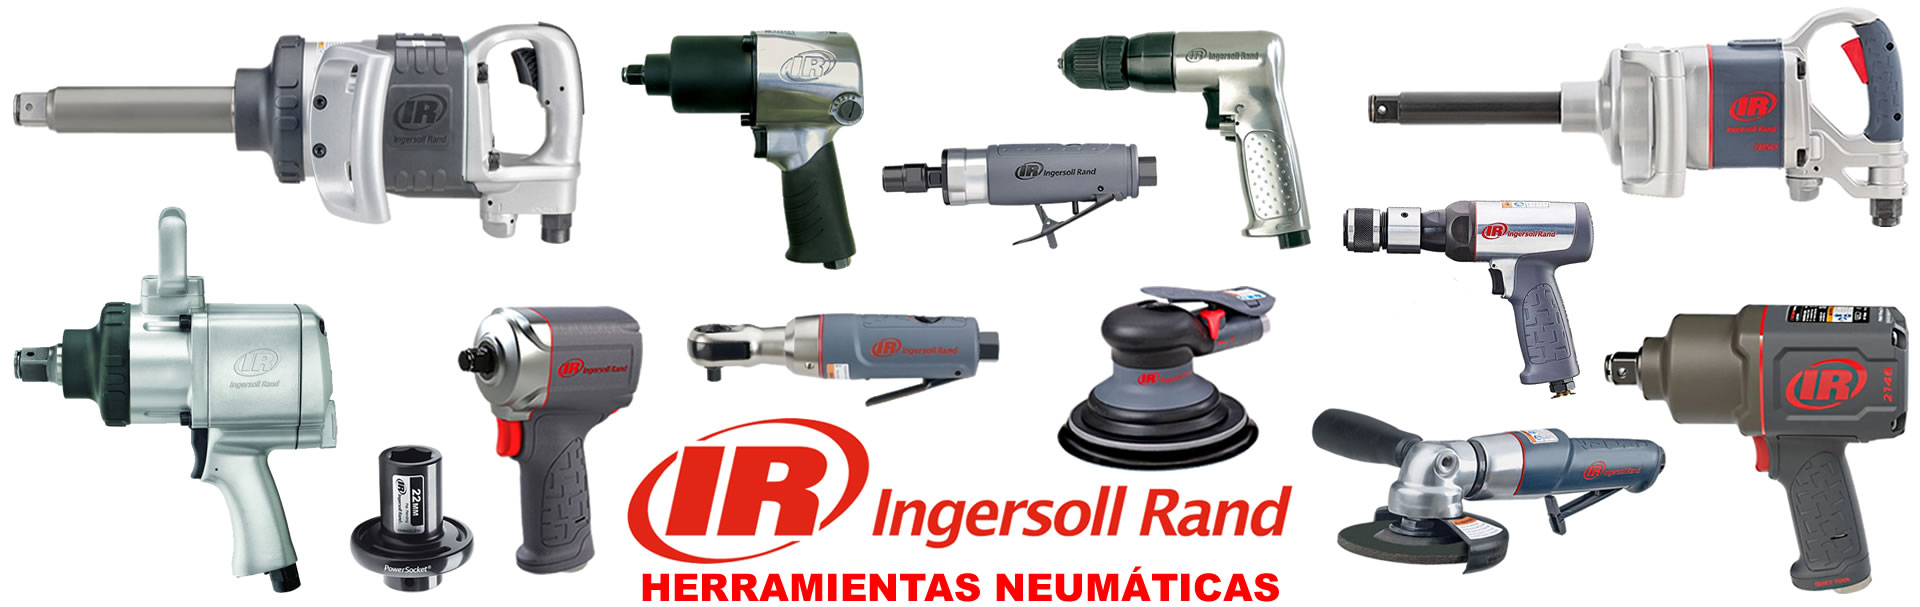 alcaner_ingersoll-rand_soluciones-industria-automación_equipamento_maquinaria_servicio-tecnico_distribuidor-oficial-ingersoll-rand_madrid-espana_banner-1-ir-herramientas